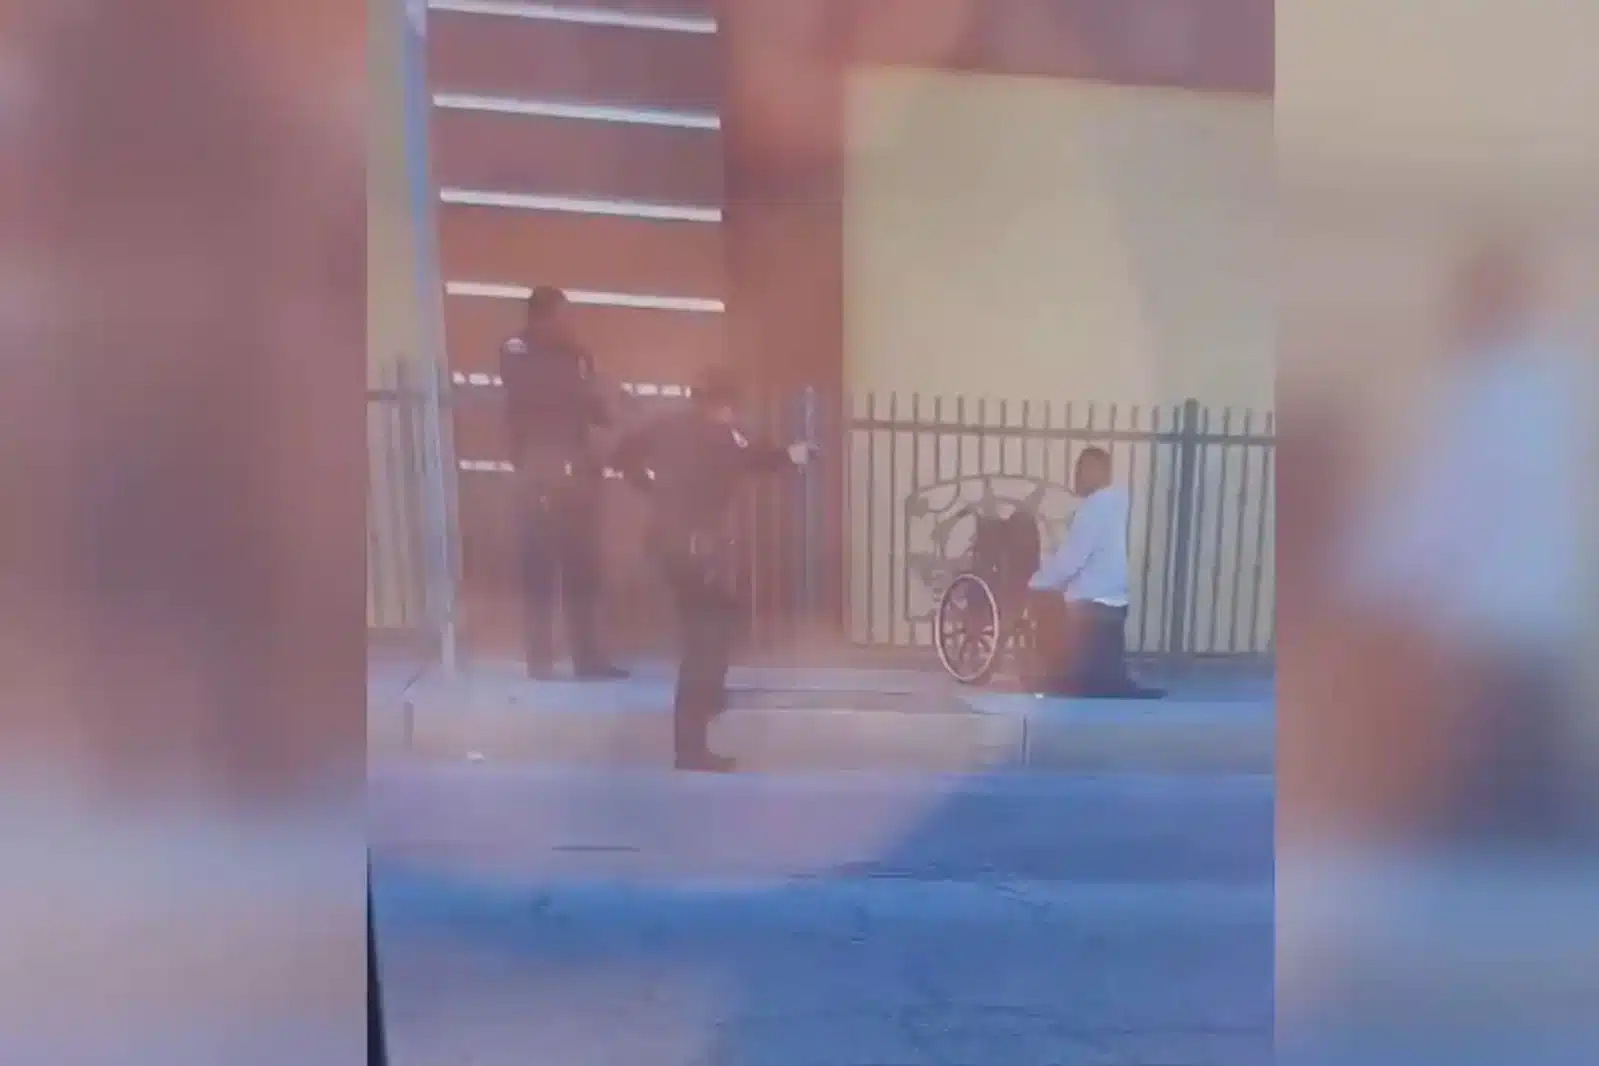 Policías disparan contra hombre en silla de ruedas en California